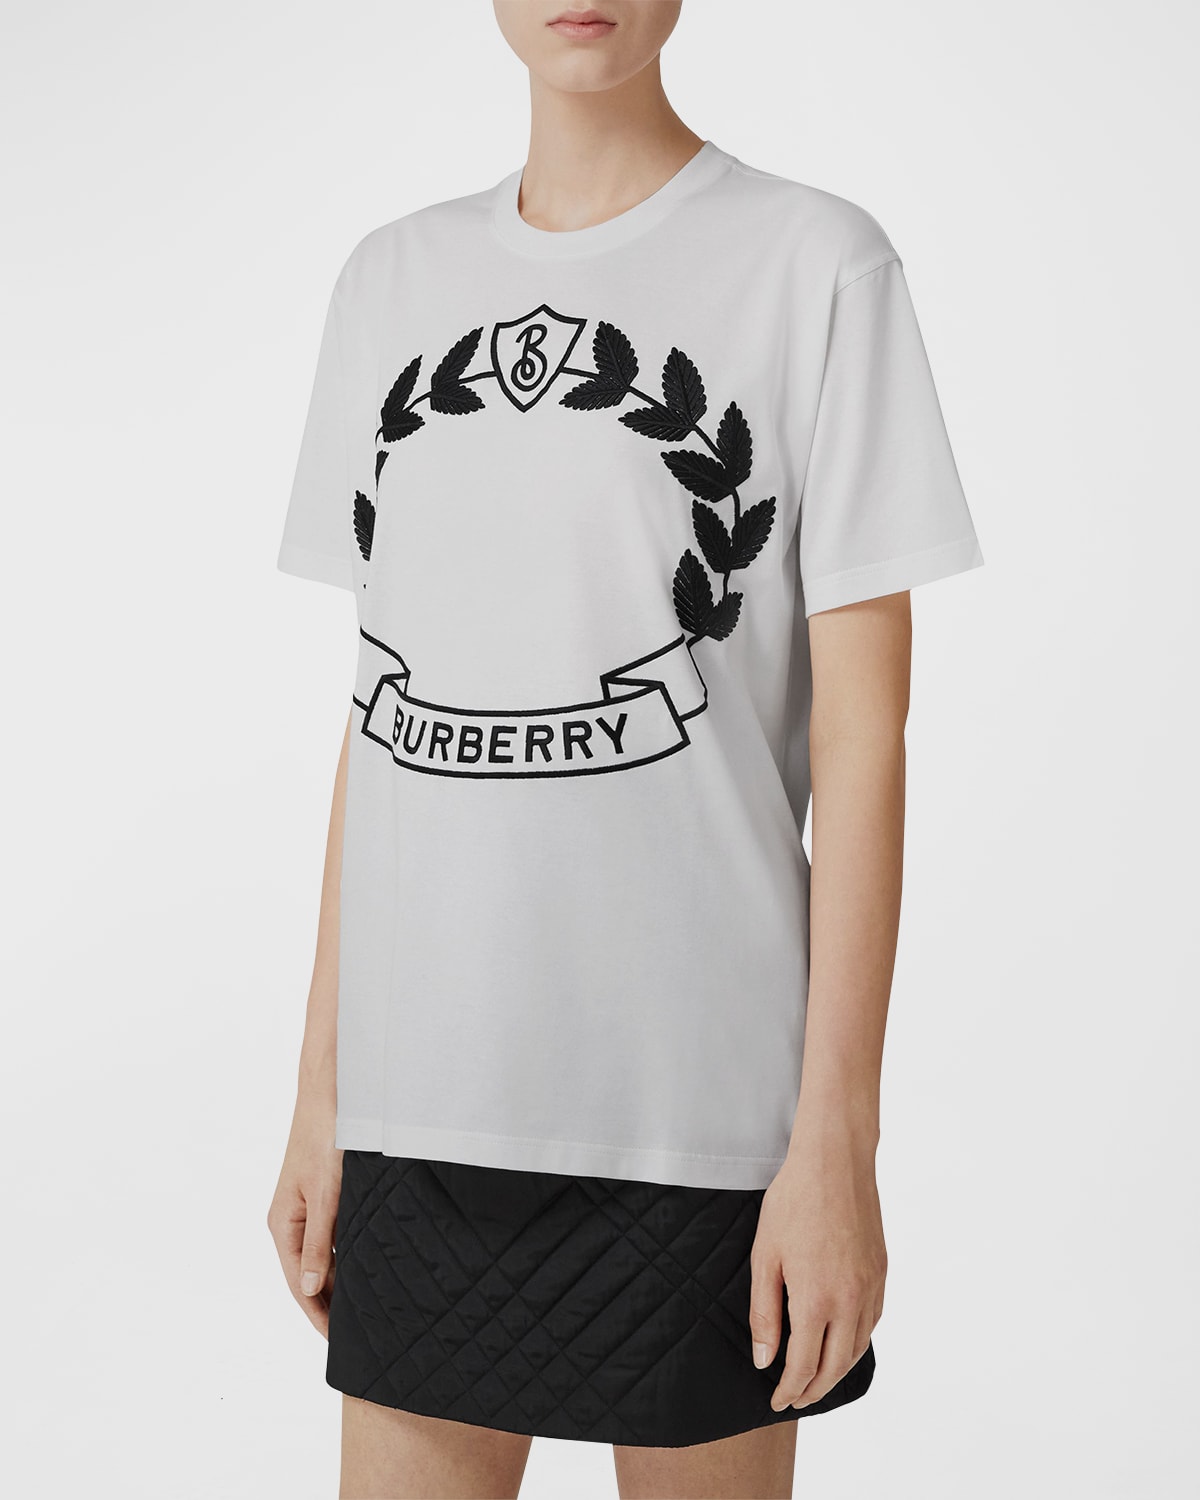 Burberry White Tshirt | Neiman Marcus